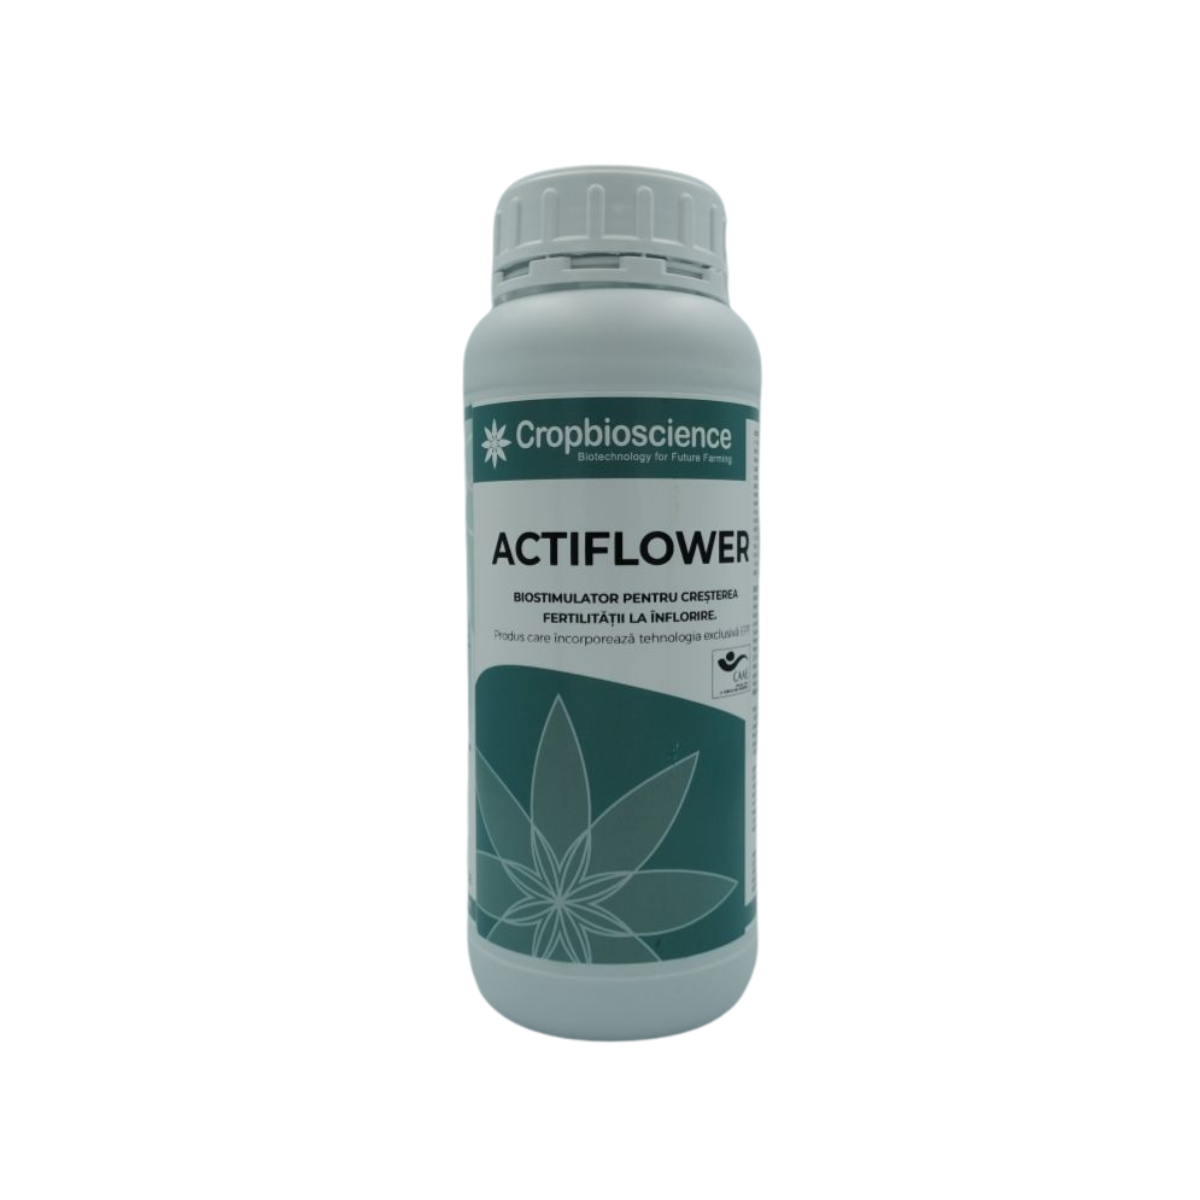 Biostimulatori eco - Biostimulator ecologic cu polifenoli pentru inflorire si fructificare Actiflower, 0.25 L, hectarul.ro